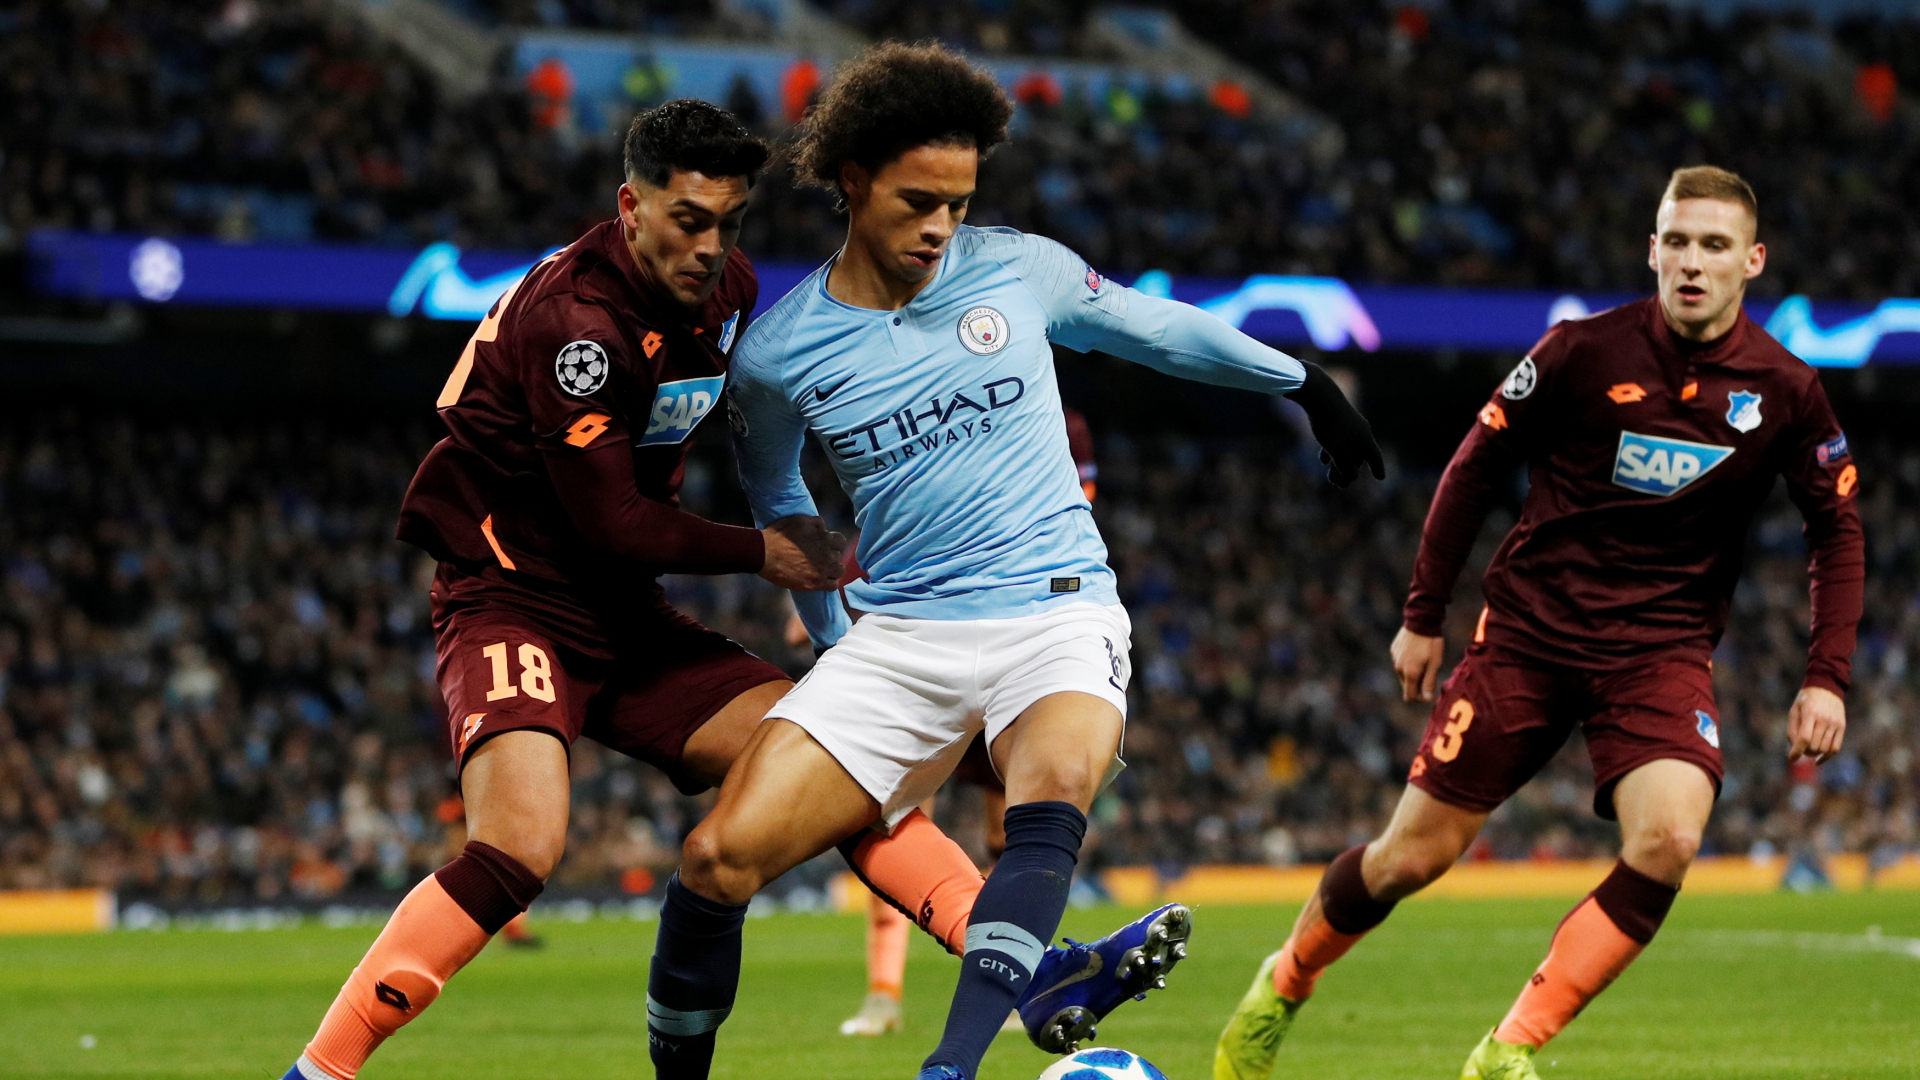 Manchester City's Leroy Sane kämpft mit Hoffenheims Nadiem Amiri  um den Ball.  | Bildquelle: REUTERS